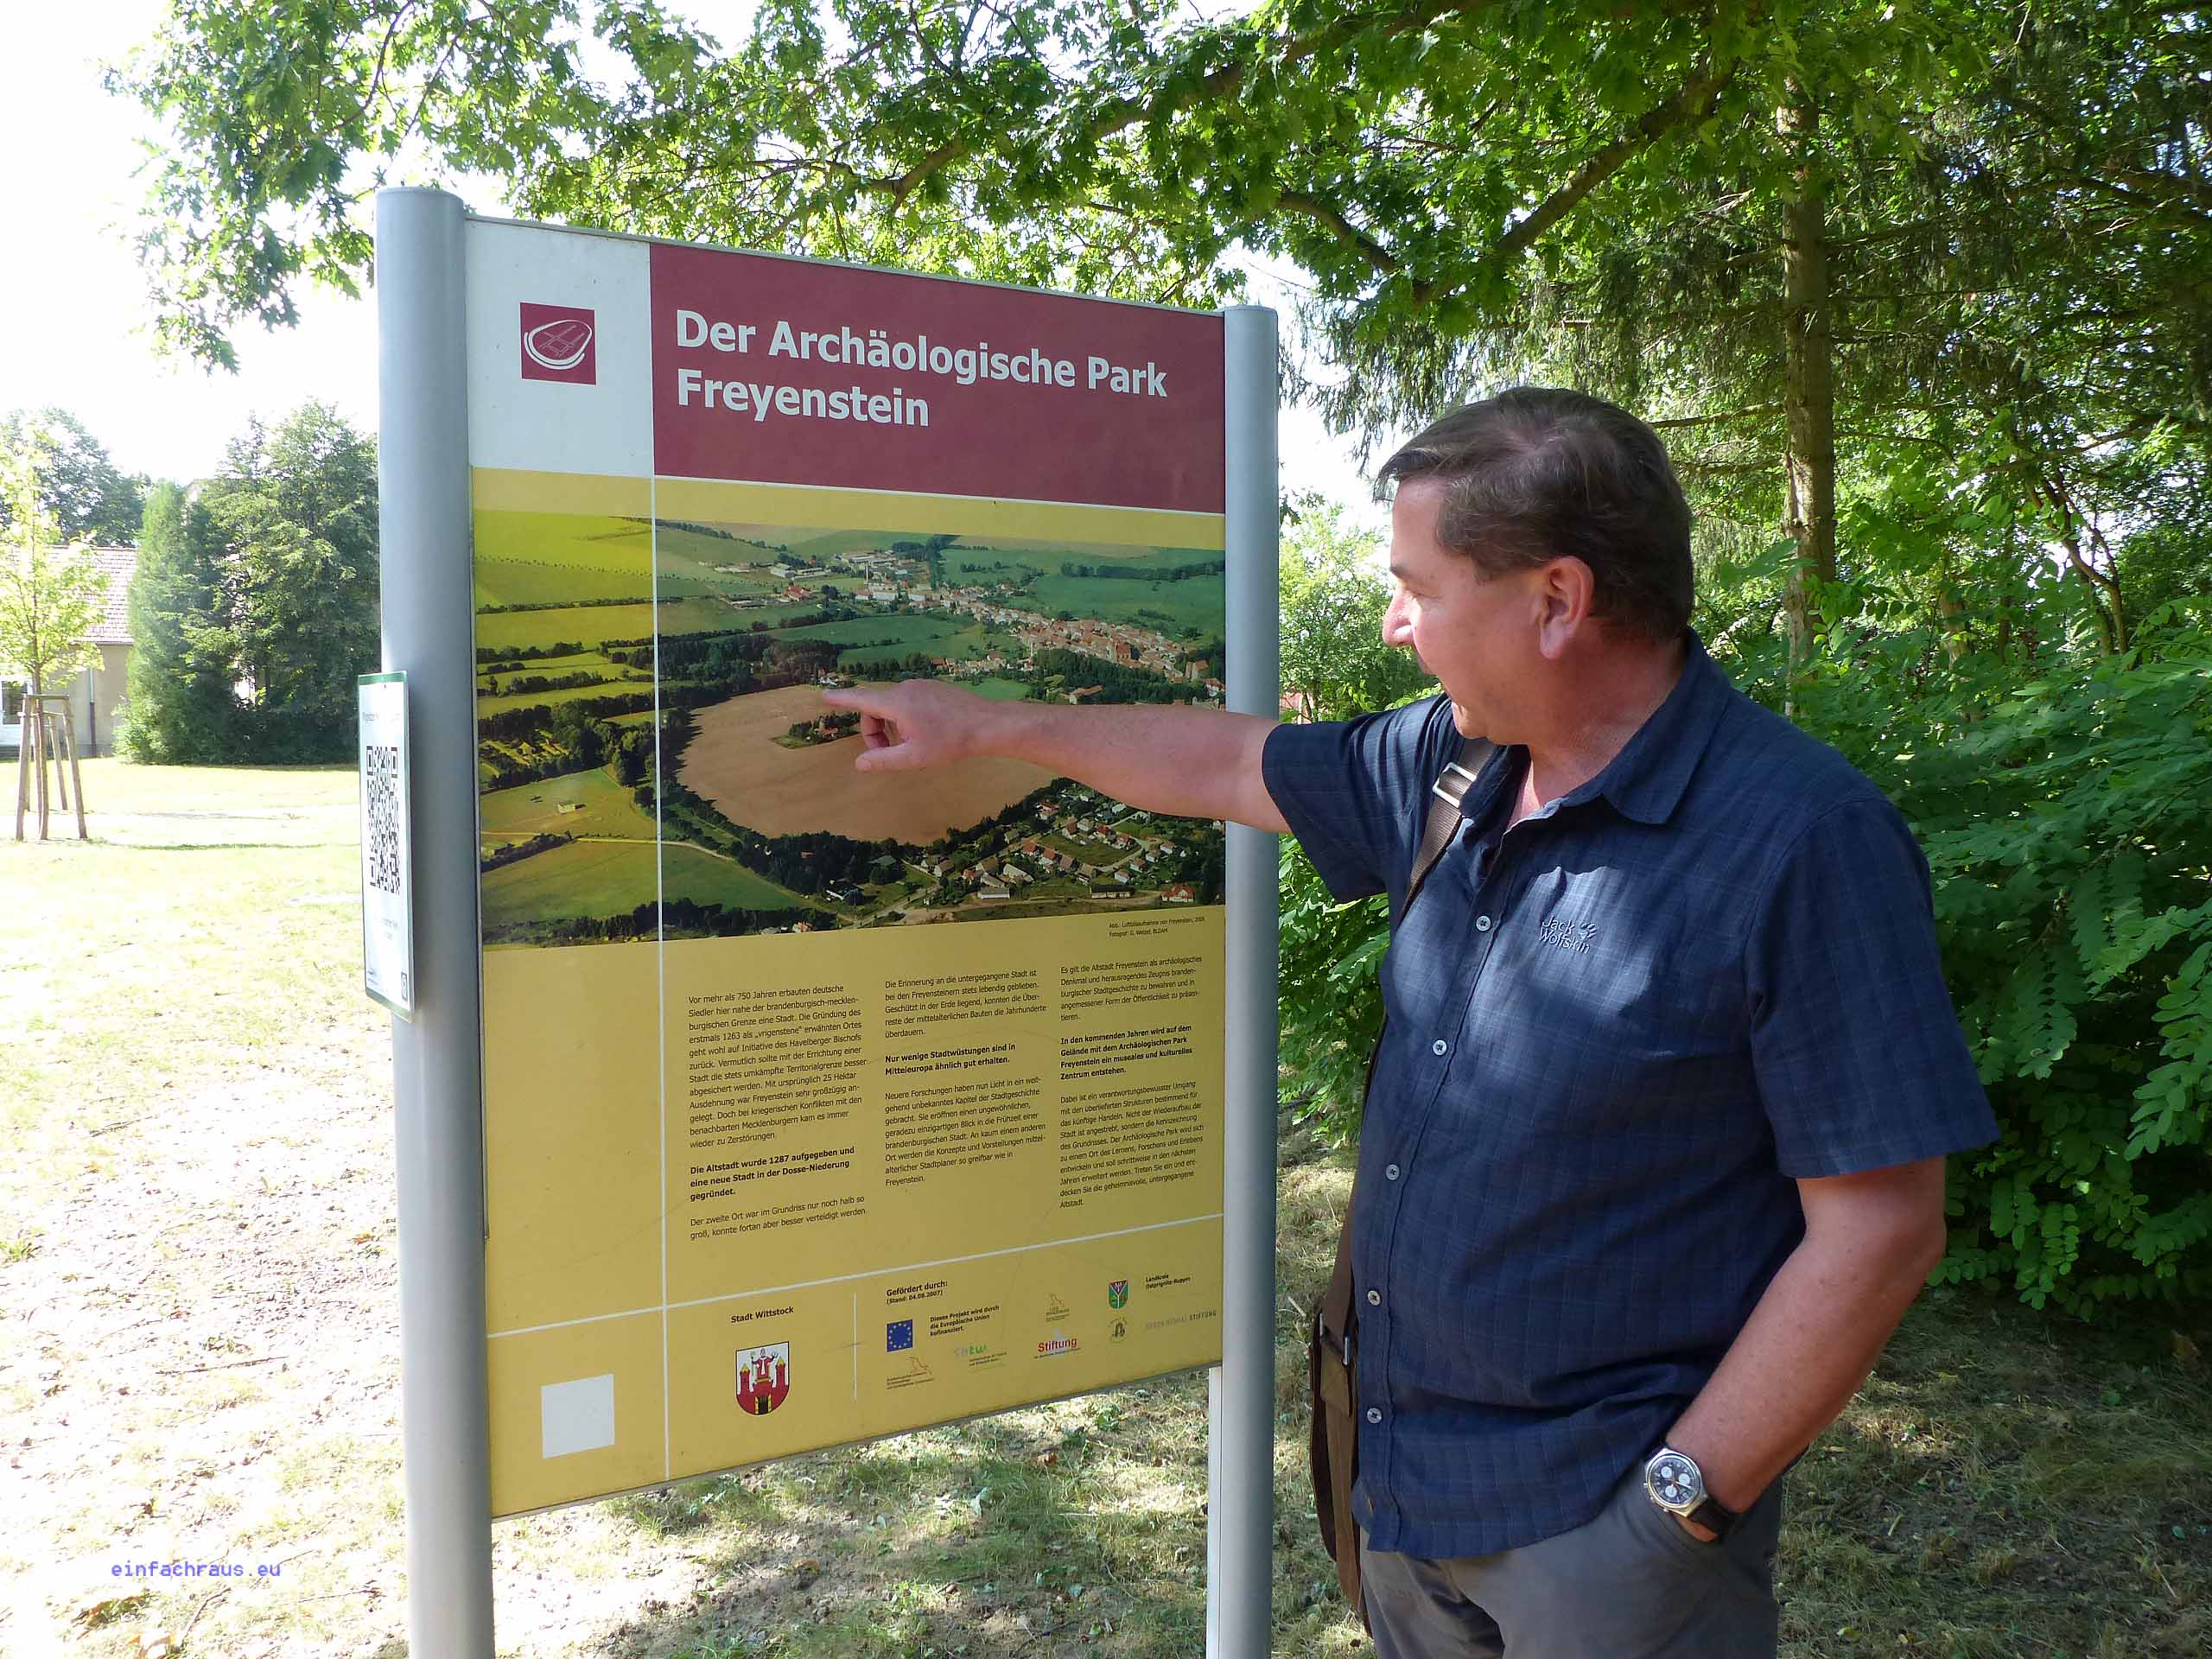 Archäologe Dr. Wacker erläutert den Archäologischen Park Freyenstein.